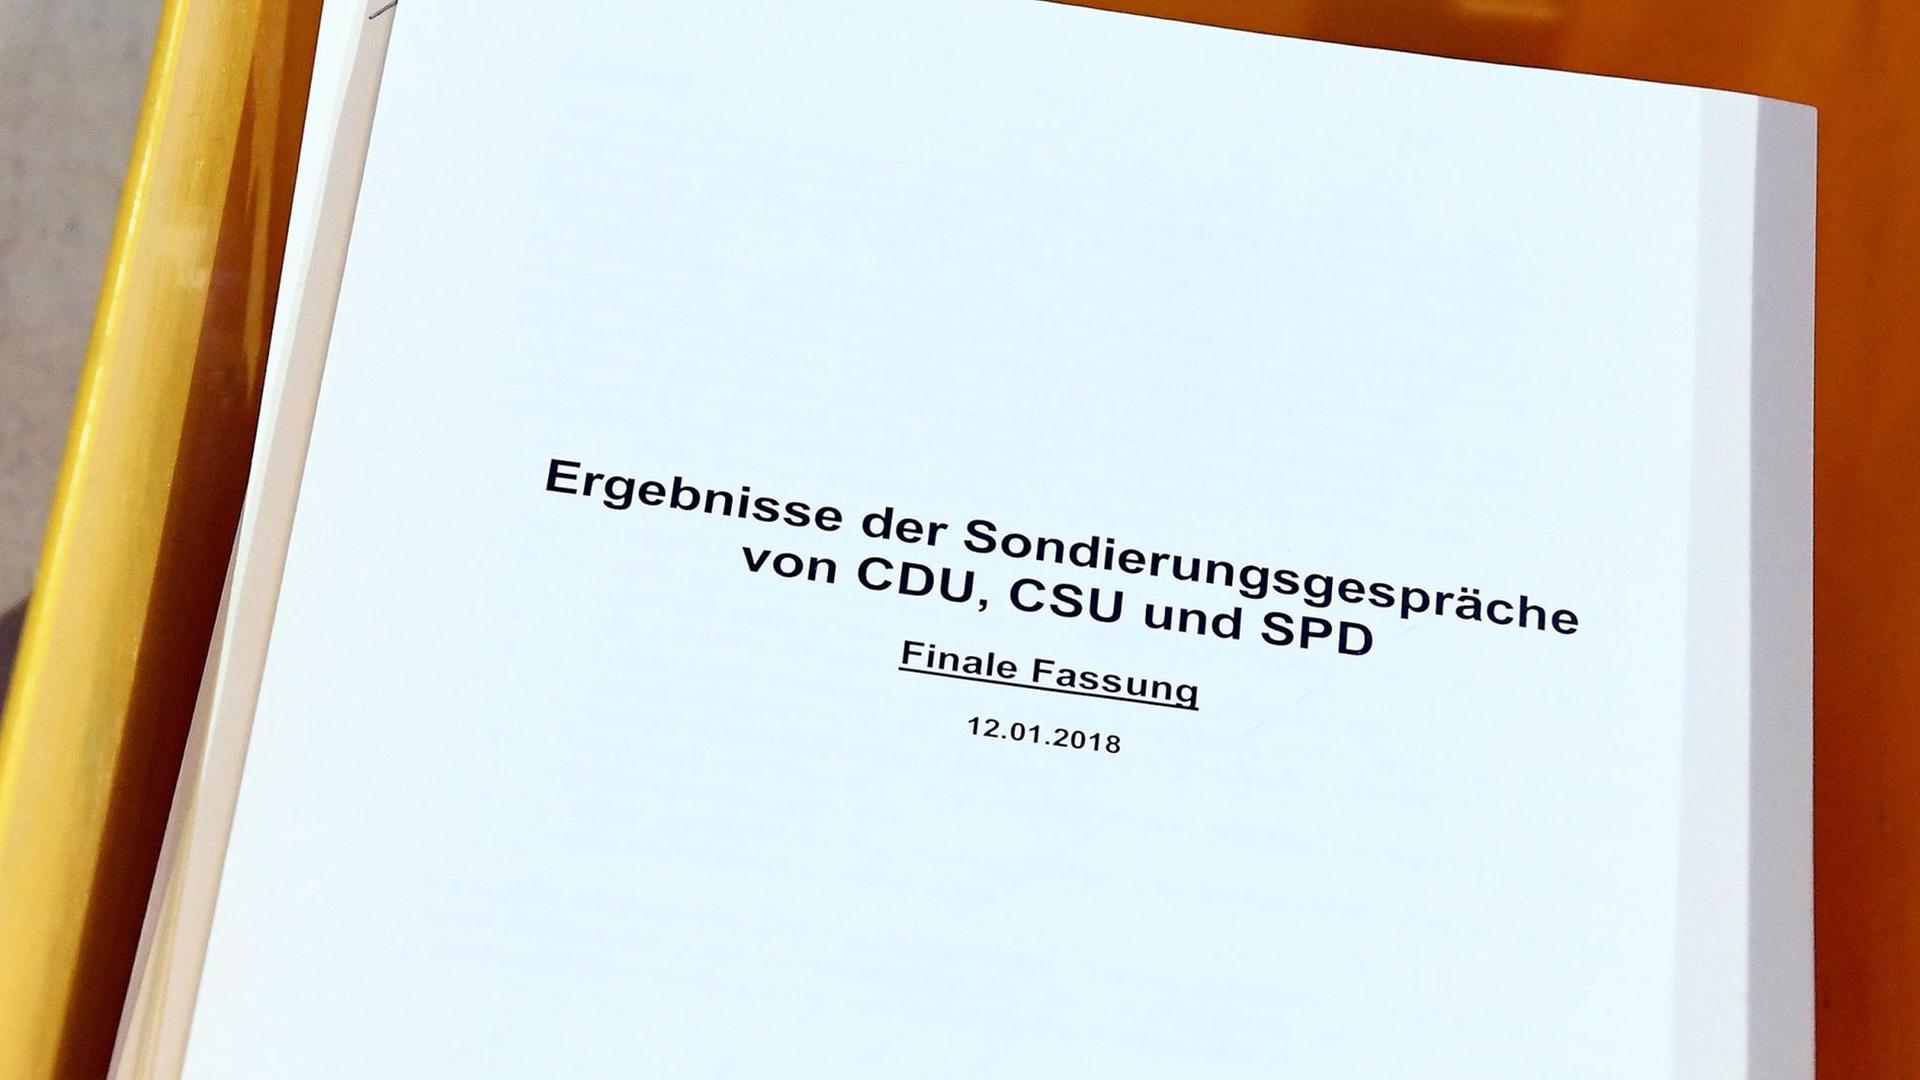 Die Finale Fassung der Ergebnisse der Sondierungsgespräche von CDU,CSU und SPD